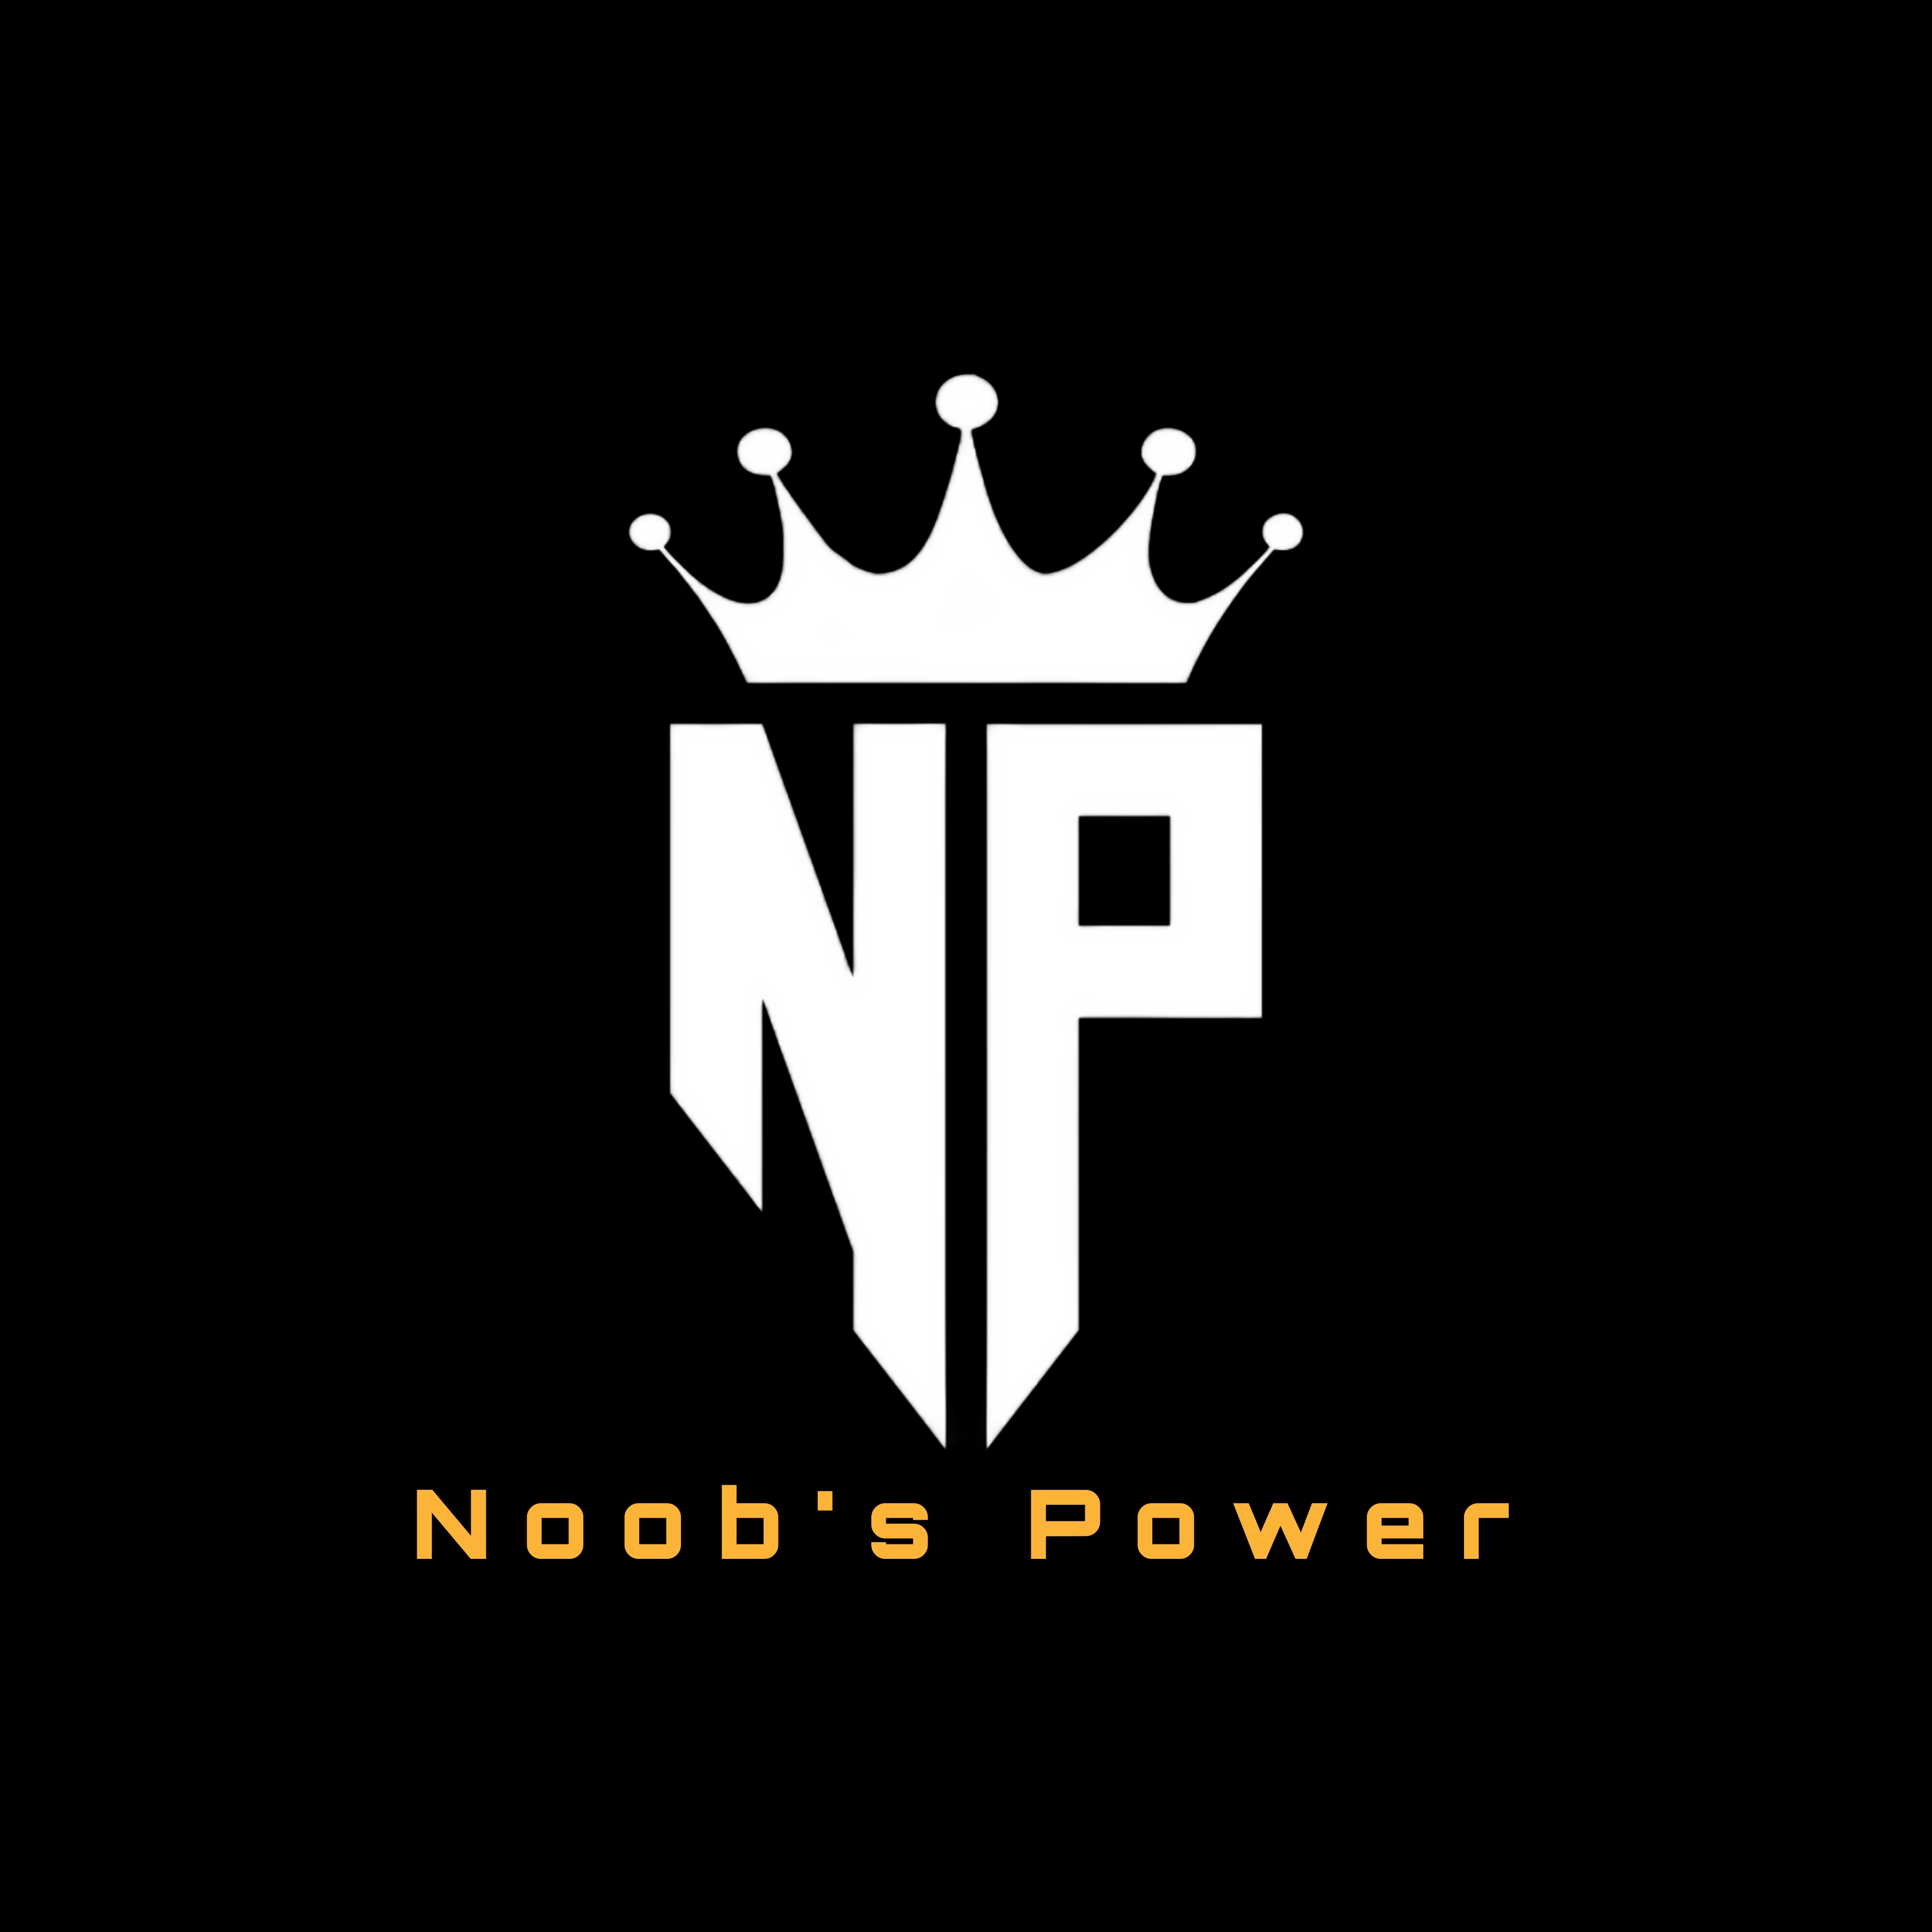 Noob's power e-sport